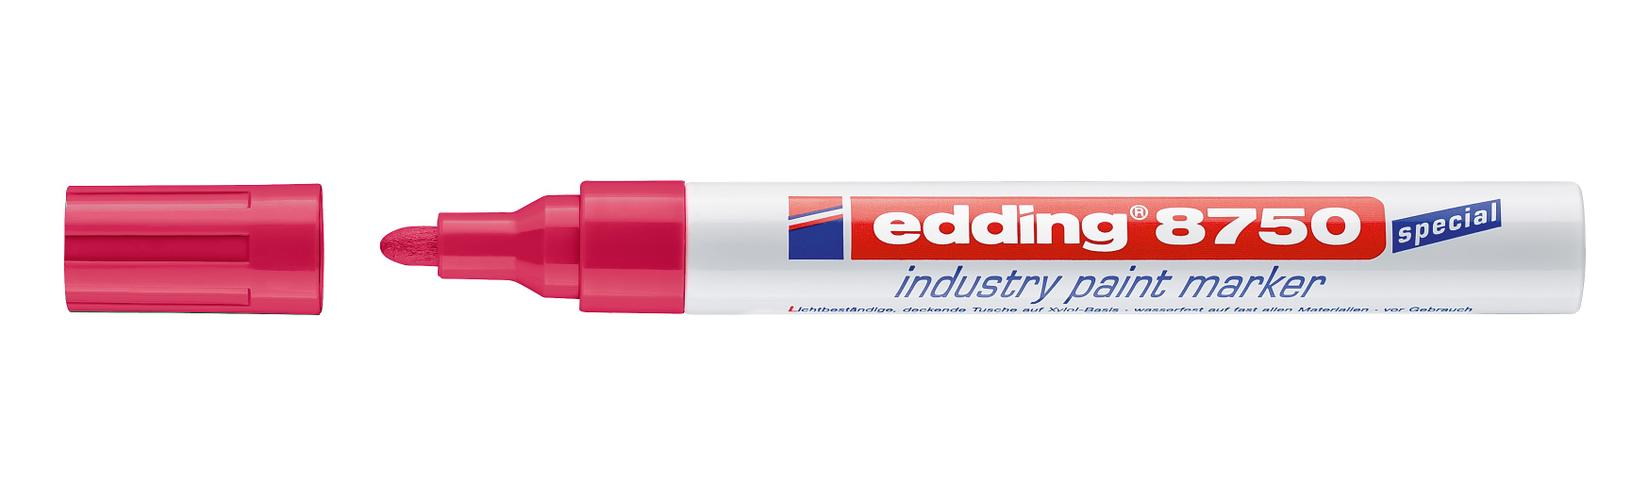 EDDING Industrijski paint marker E-8750 2-4mm crveni